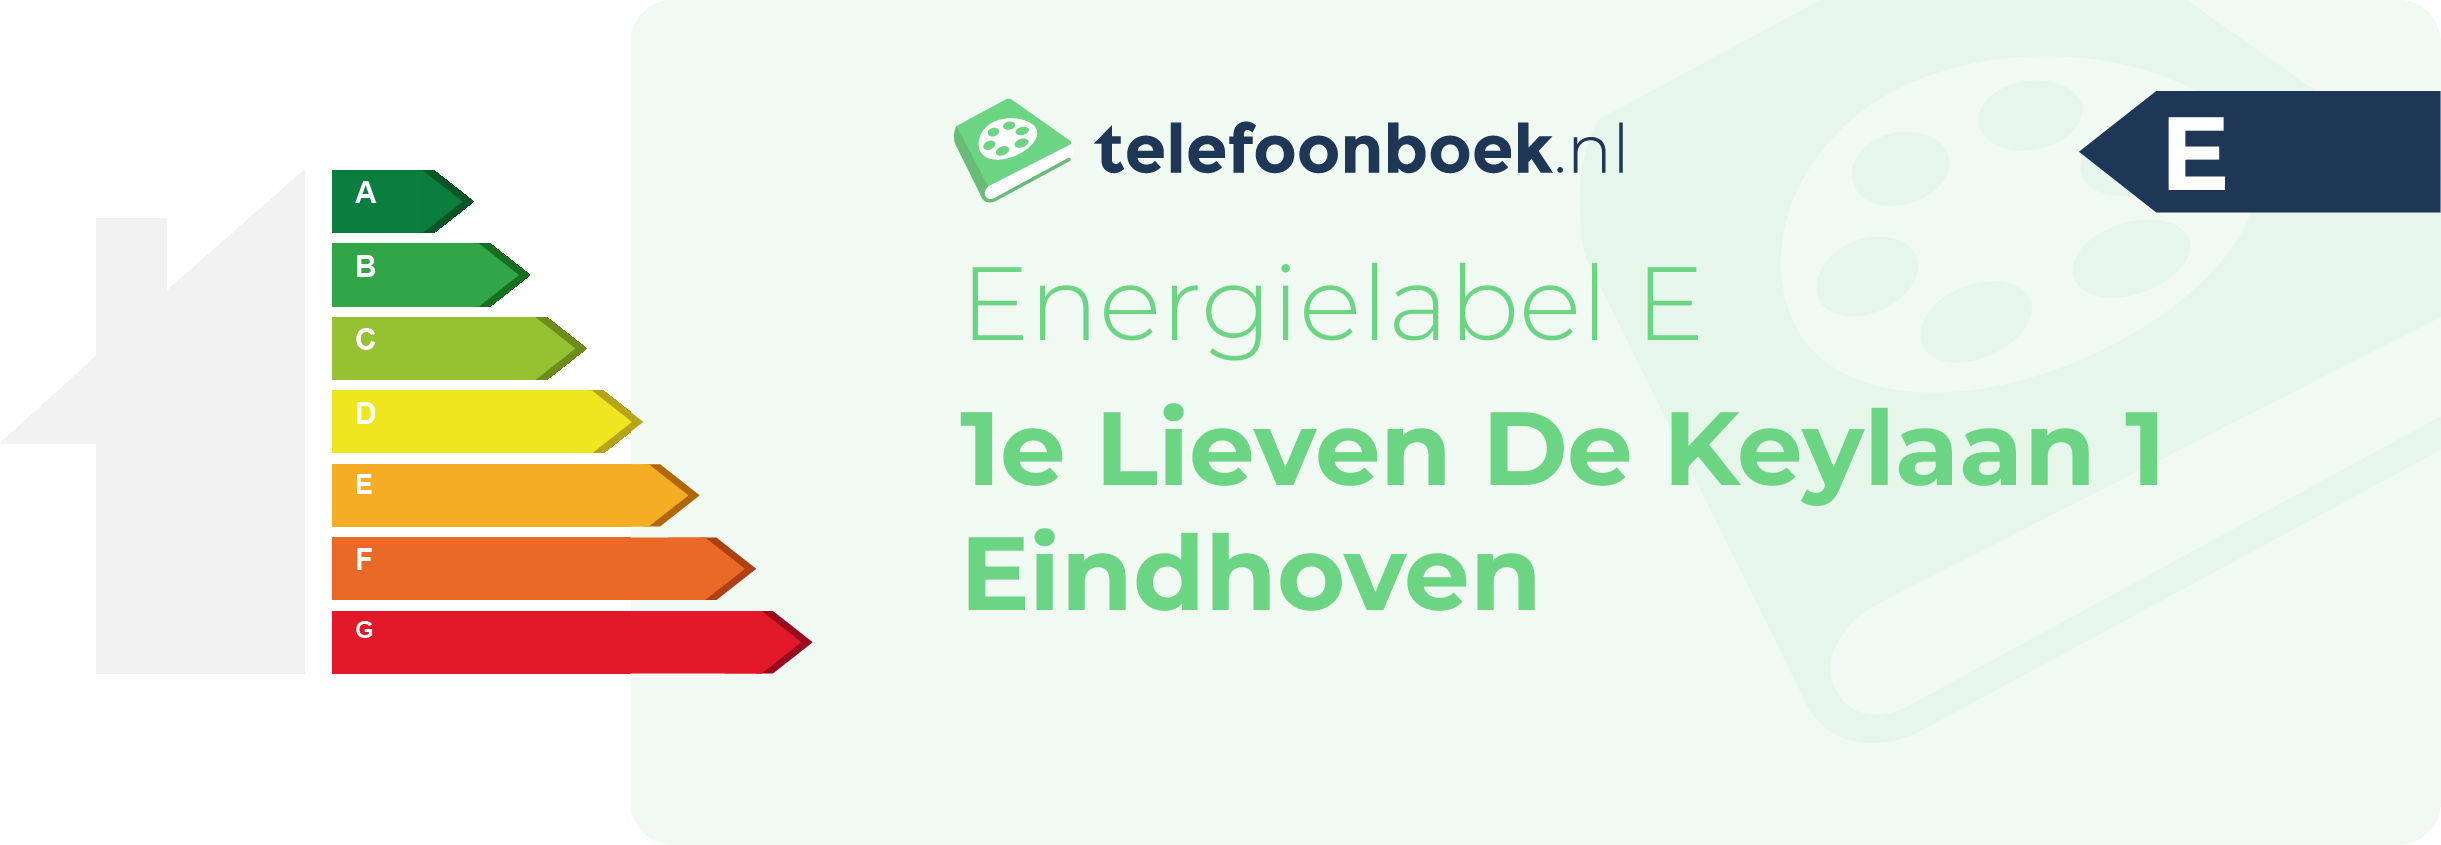 Energielabel 1e Lieven De Keylaan 1 Eindhoven